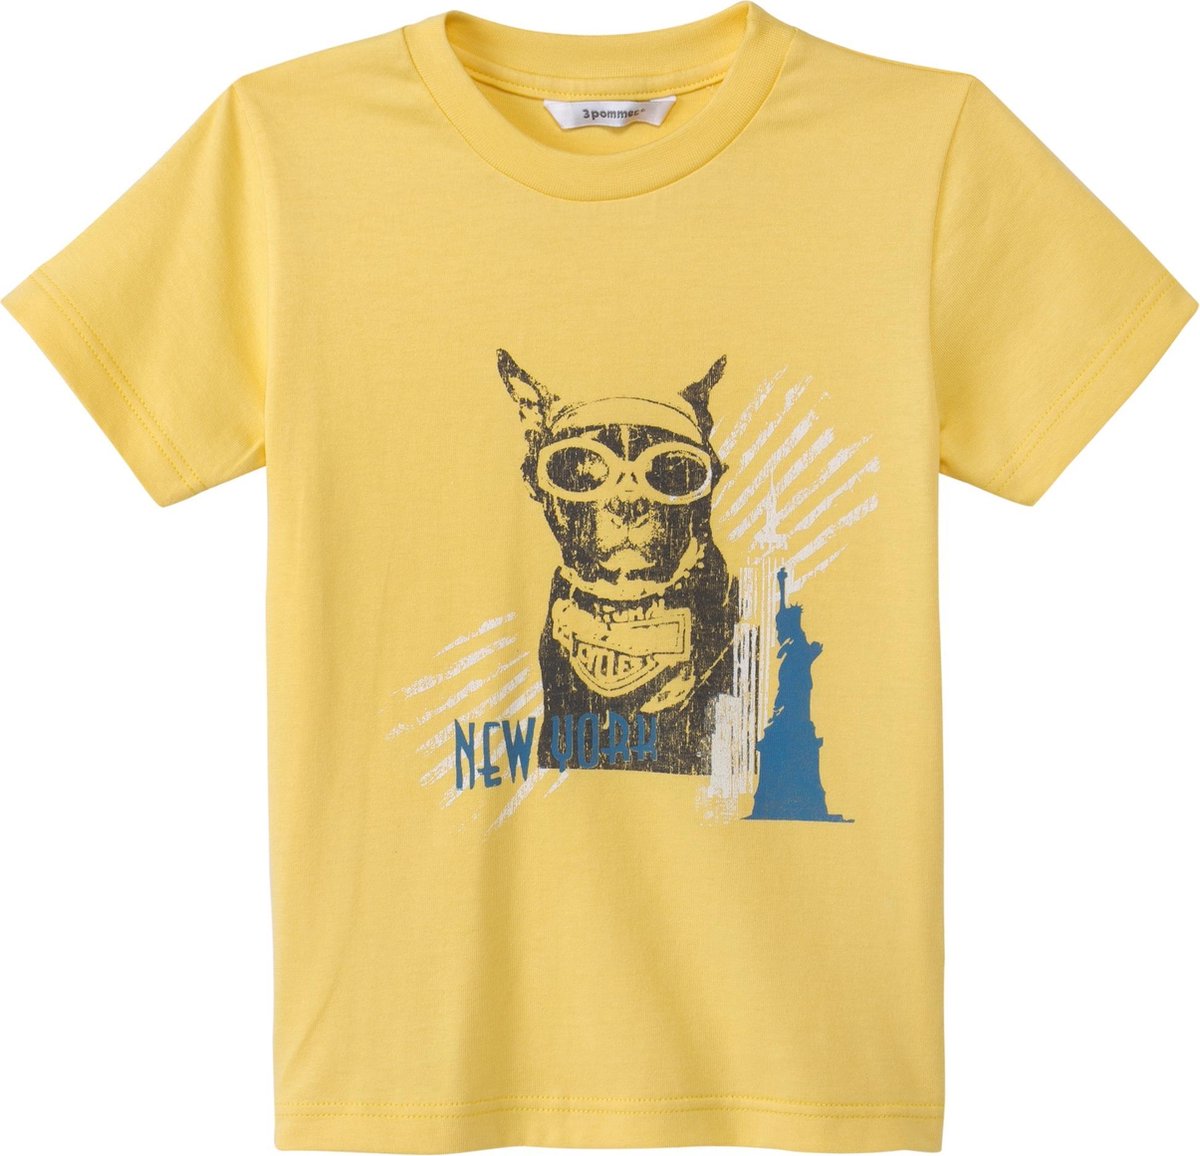 3pommes - Shirt - Geel met Hond - Maat 110